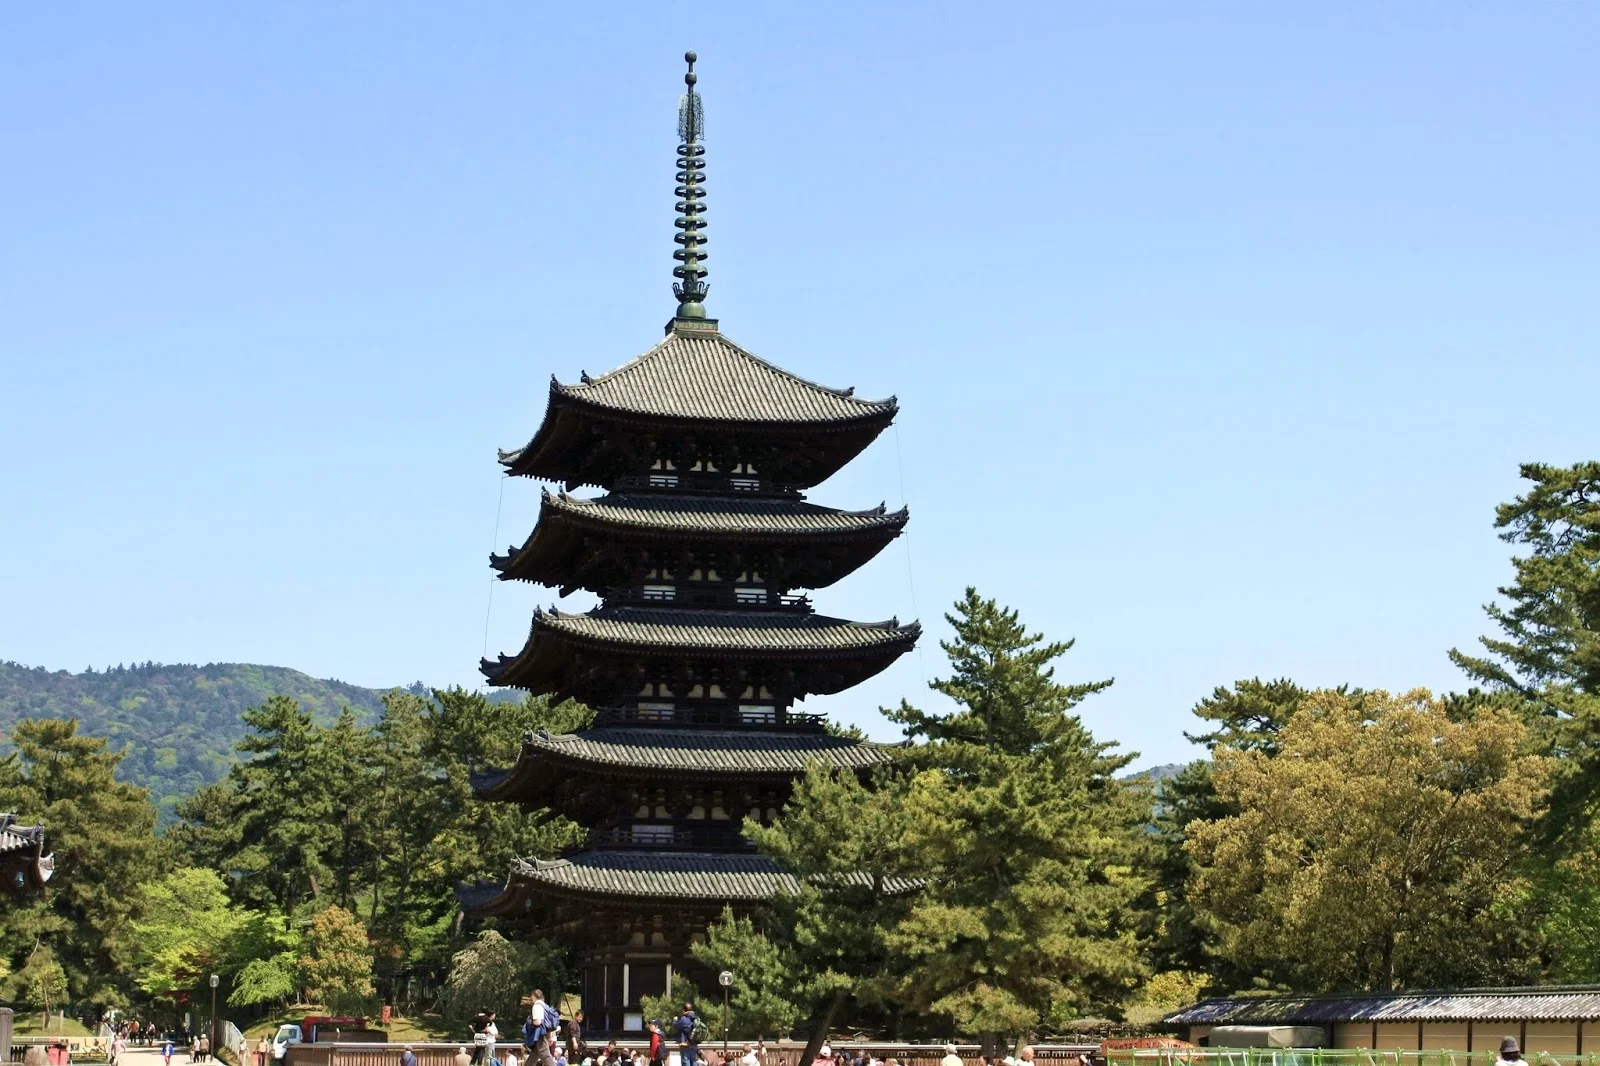 奈良-奈良景點-推薦-興福寺-Kohfukuji Temple-市區-自由行-奈良必玩景點-奈良必遊景點-奈良一日遊-奈良好玩景點-必去-旅遊-觀光-日本-Nara-Tourist-Attraction